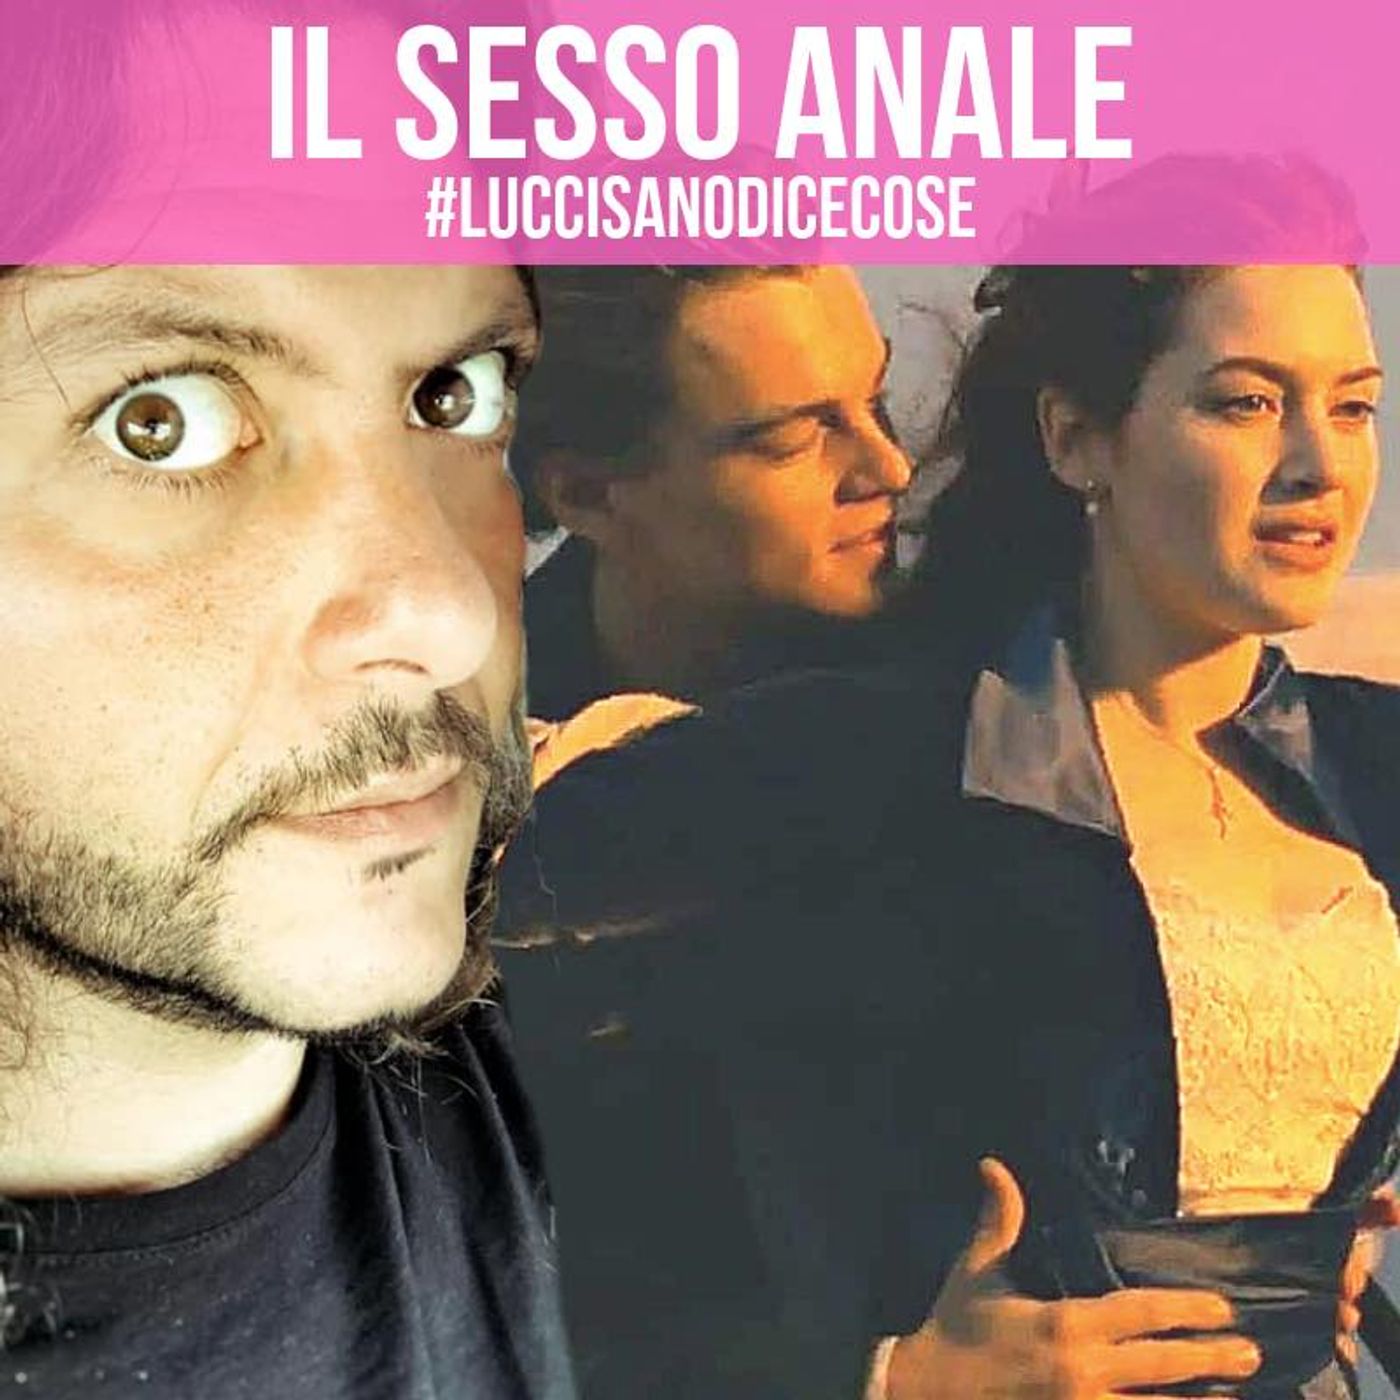 Il Sesso Anale by Emiliano Luccisano